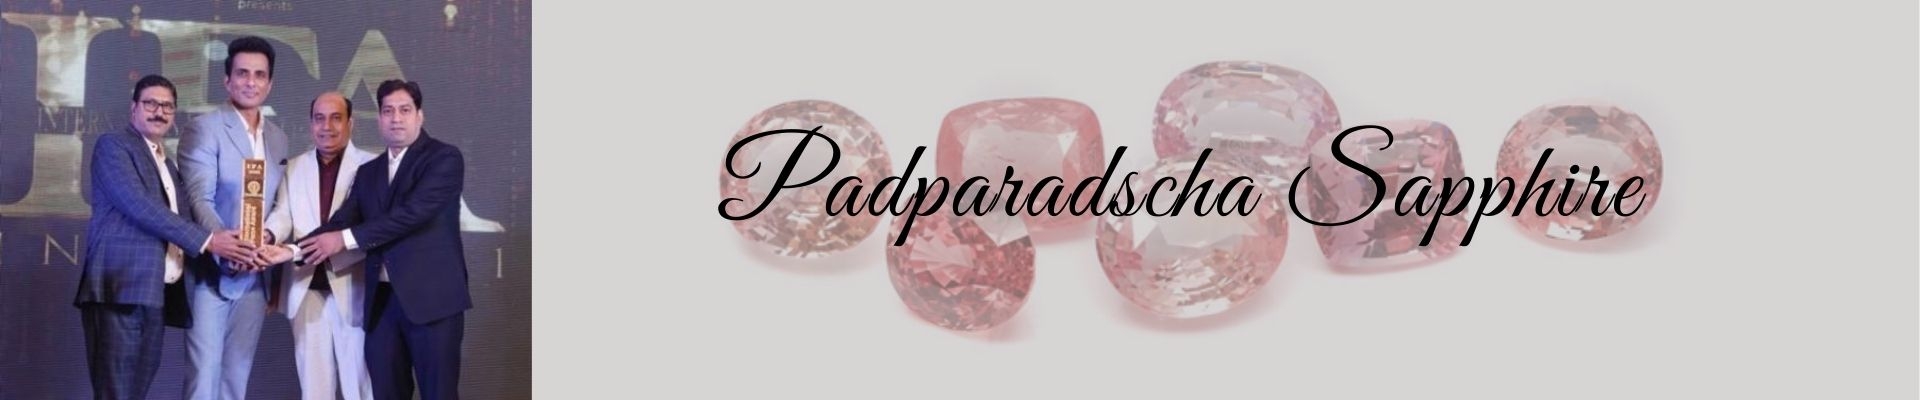 Padparadscha Sapphire | Padparadscha Sapphire Gemstone | Padparadscha Sapphire Stone |